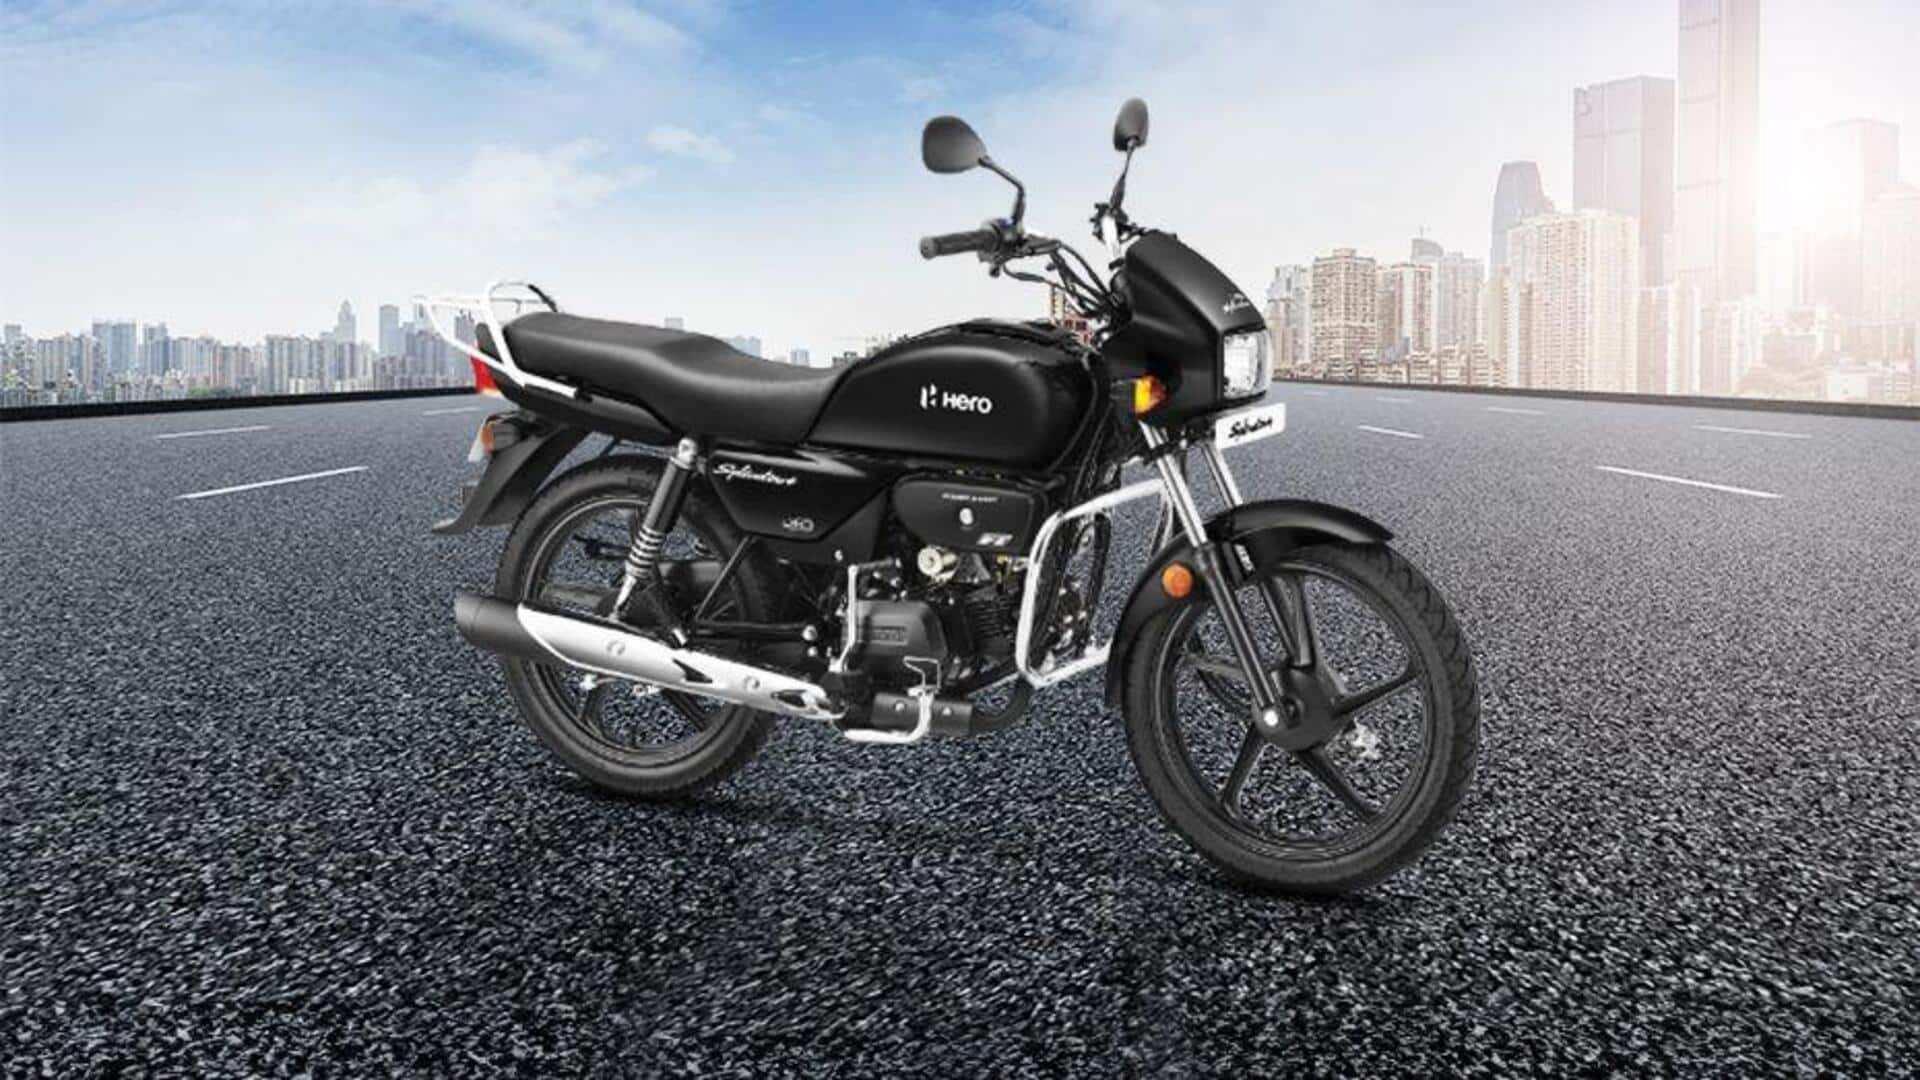 Indian motorcycle sales skyrocket in February: Hero, Bajaj, and more